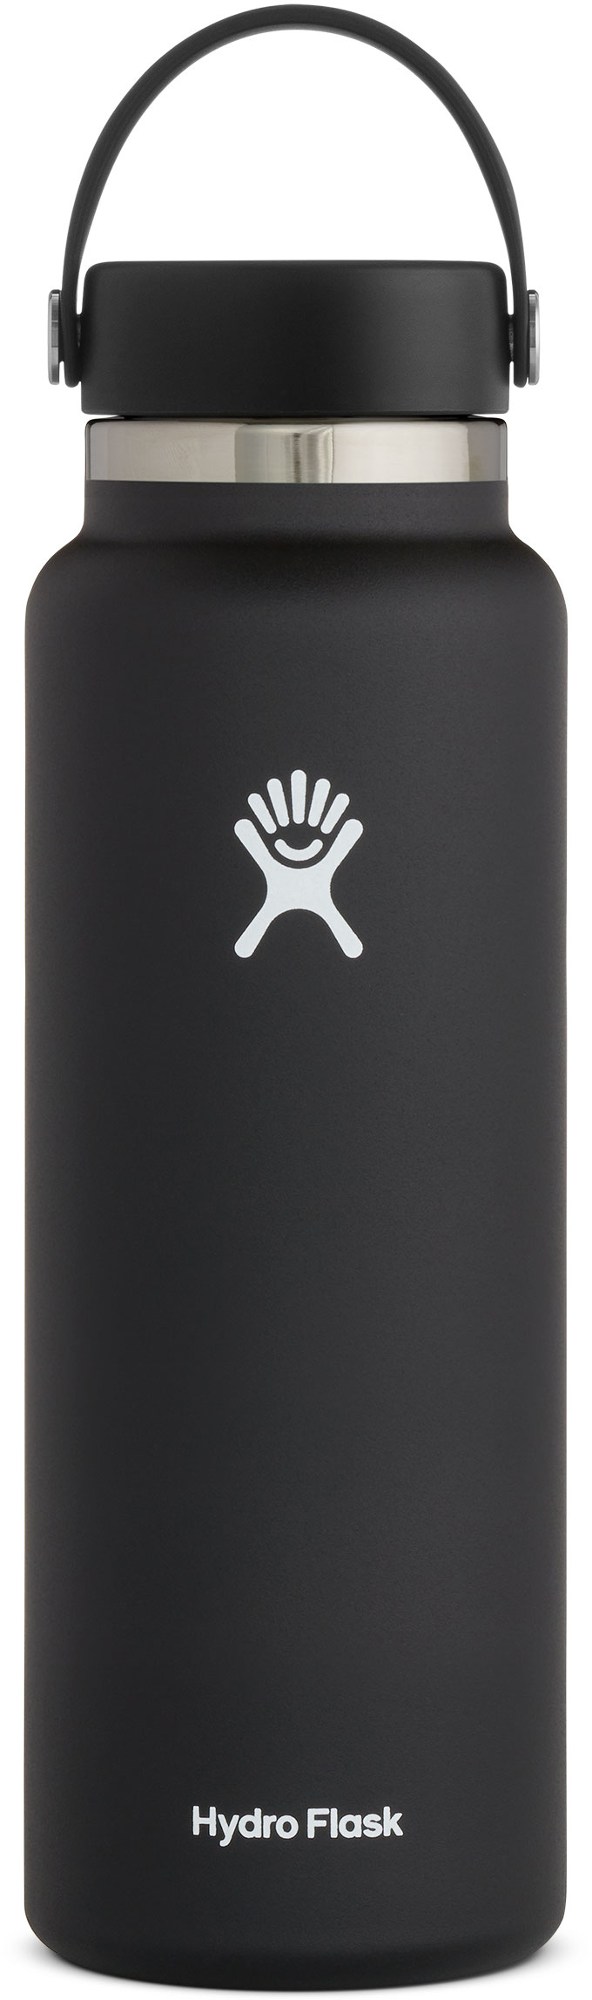 Вакуумная бутылка для воды с широким горлышком и гибкой крышкой — 40 эт. унция Hydro Flask, черный